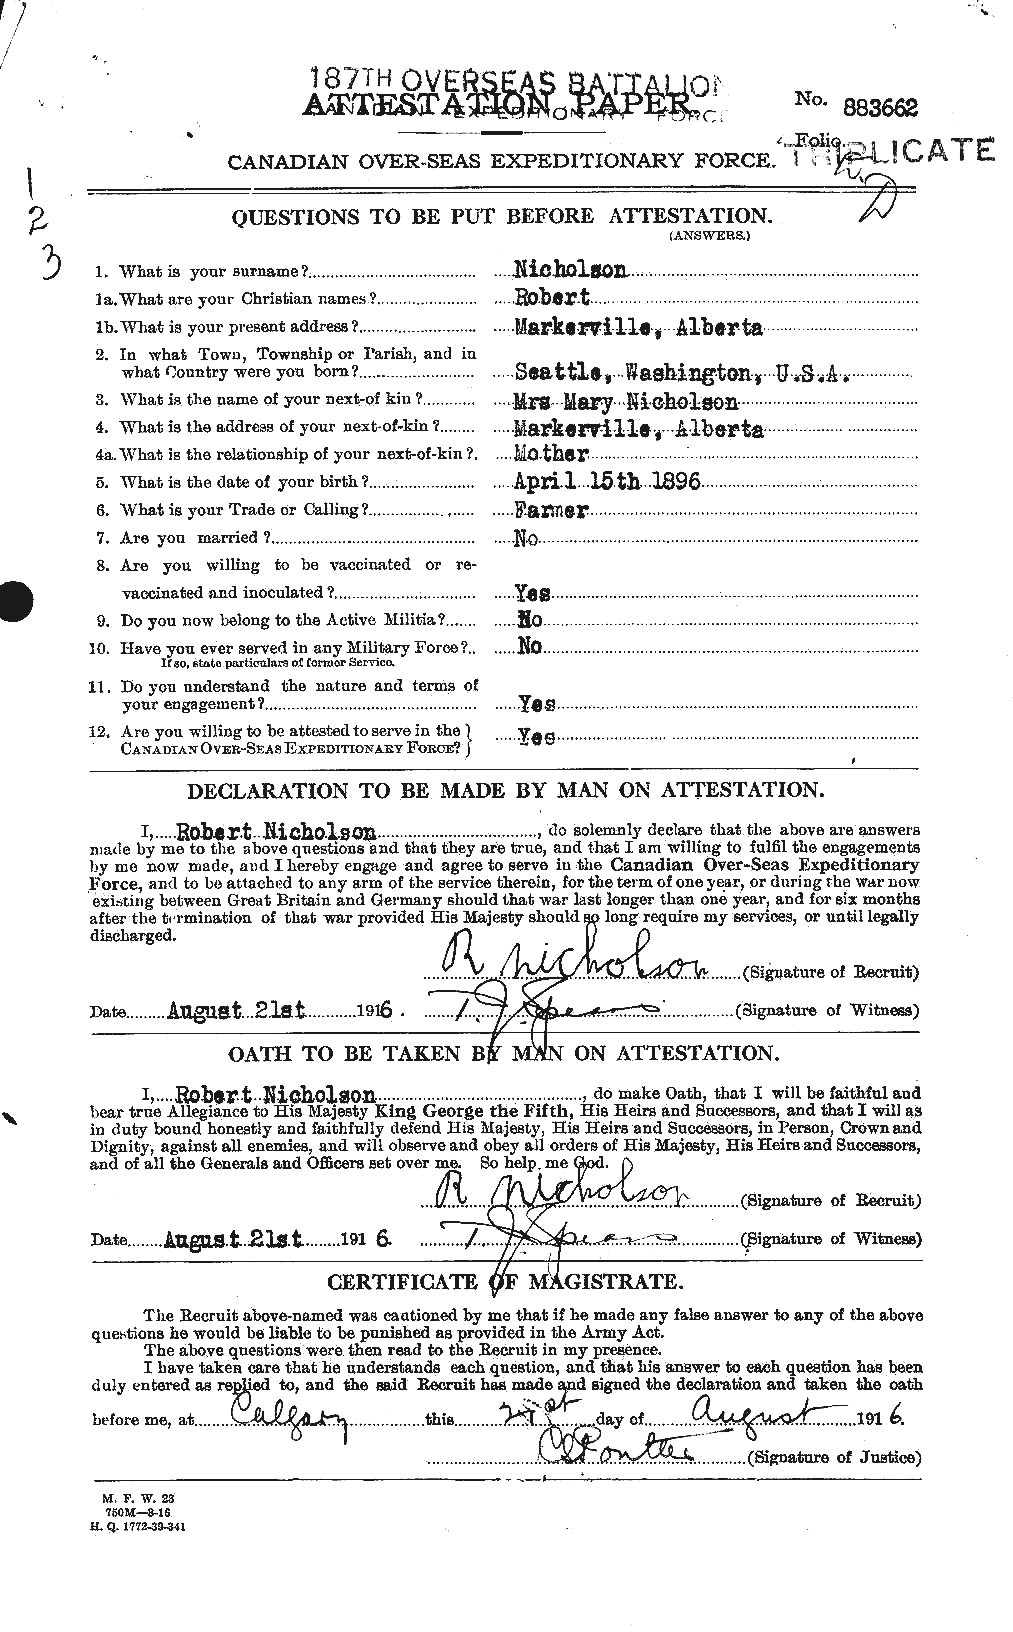 Dossiers du Personnel de la Première Guerre mondiale - CEC 554342a